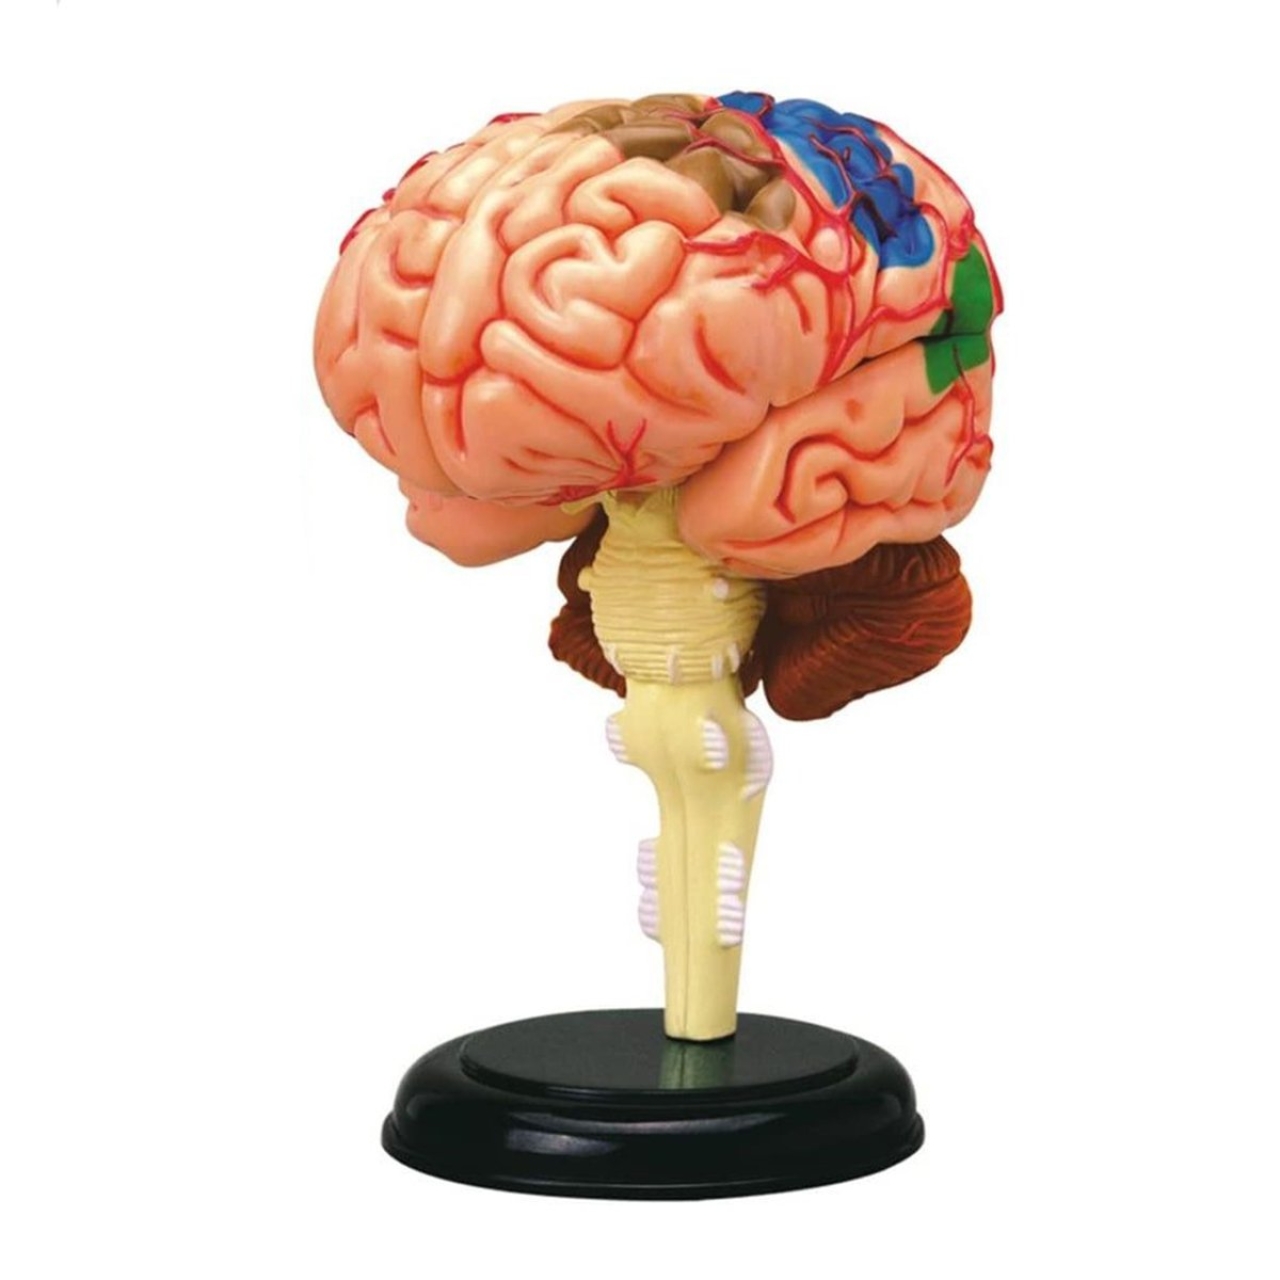 بازی آموزشی مدل آناتومی مغز انسان کد 626008